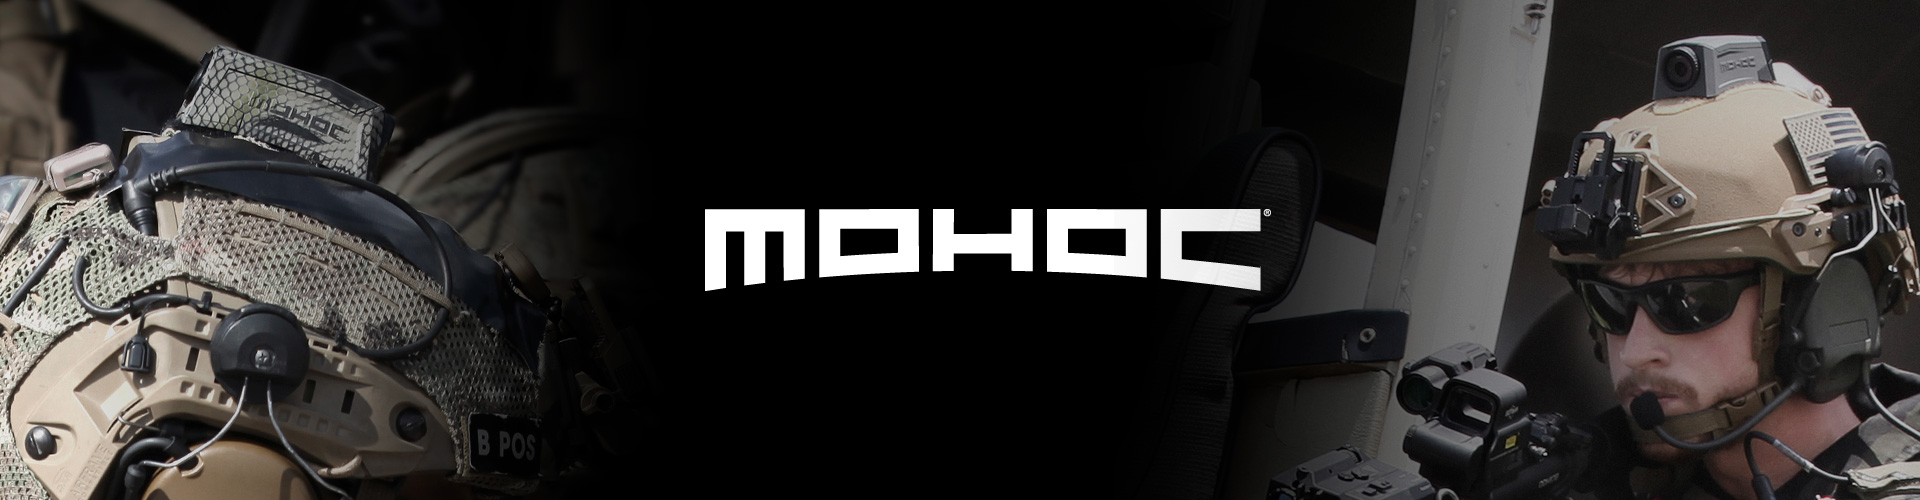 MOHOC Elite Ops - nahełmowe kamery taktyczne